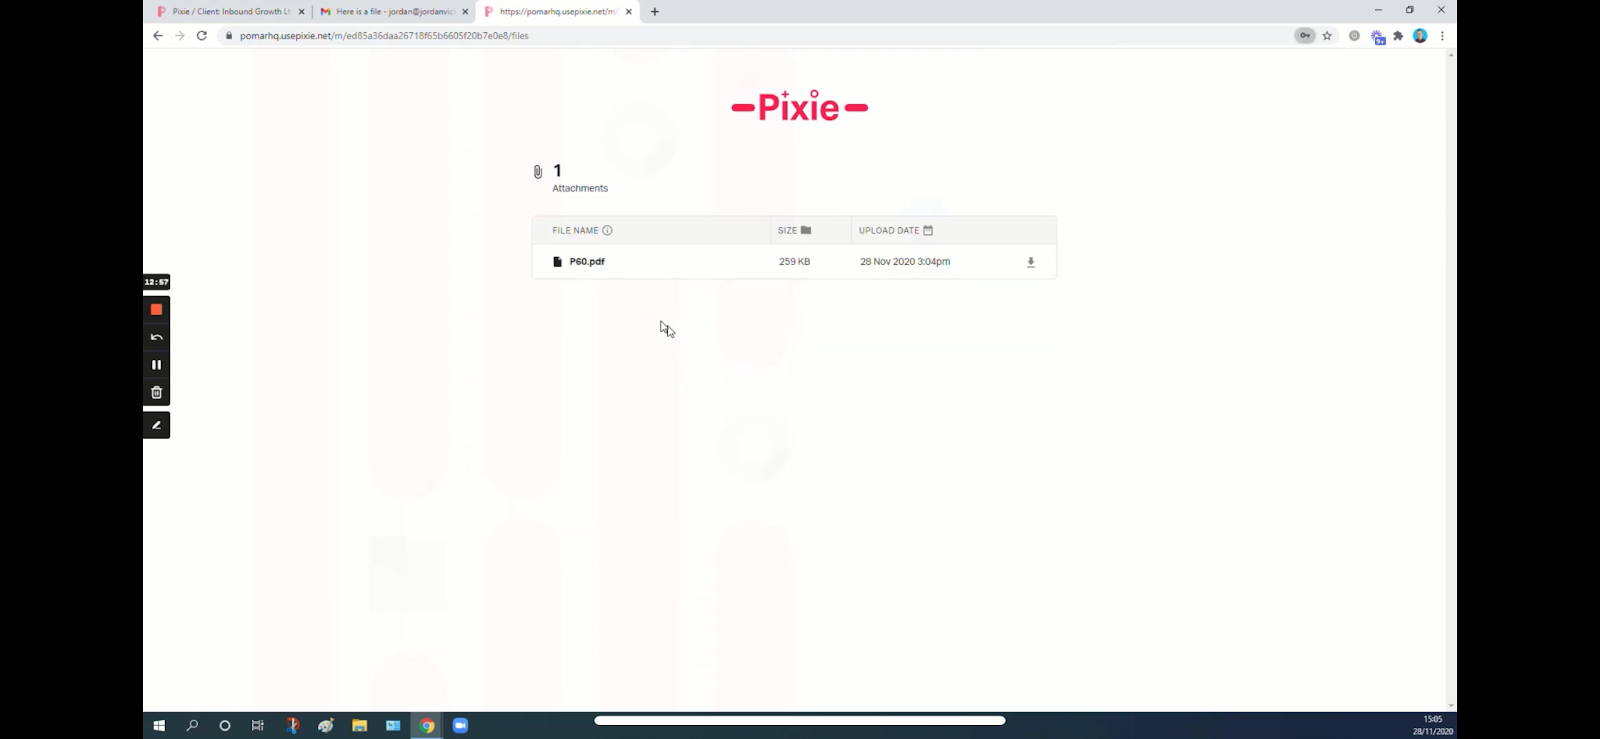 Pixie Client Storage